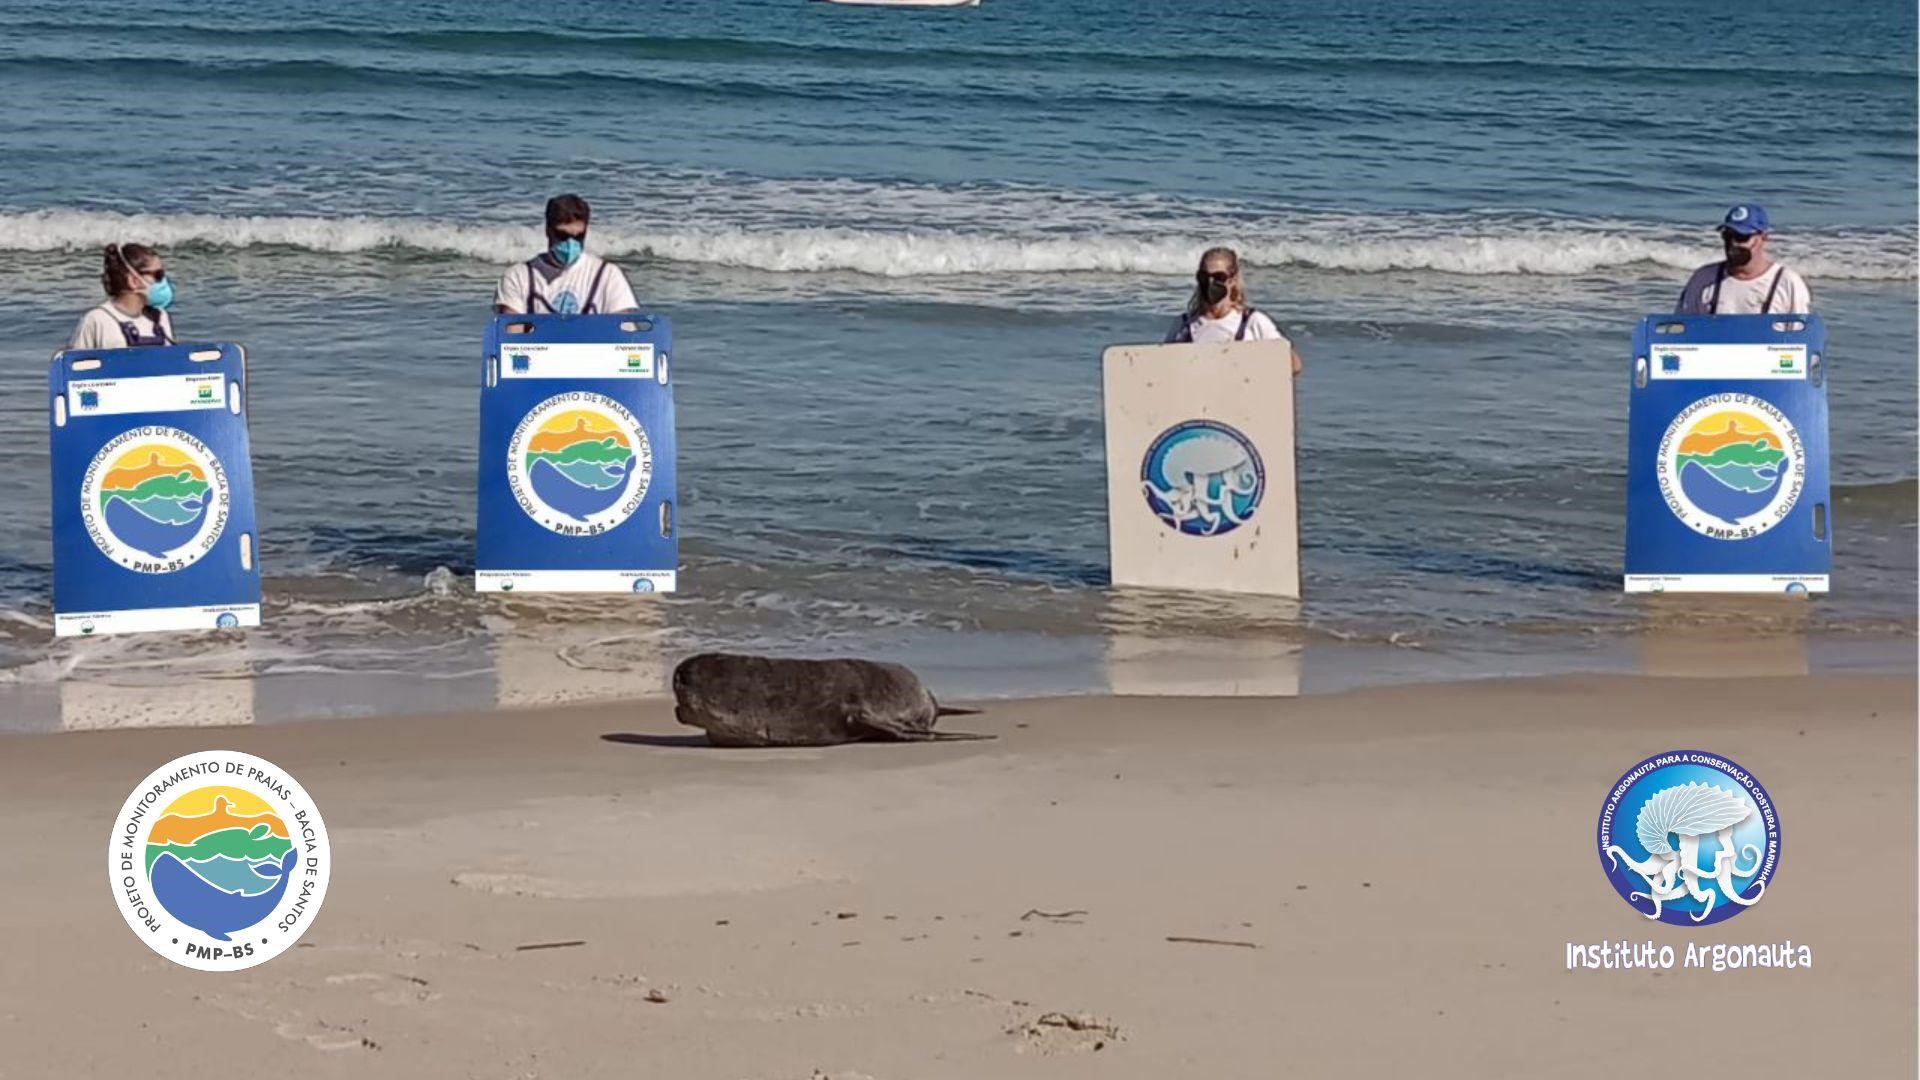 Instituto Argonauta Monitorou Lobo-Marinho em Praia de São Sebastião